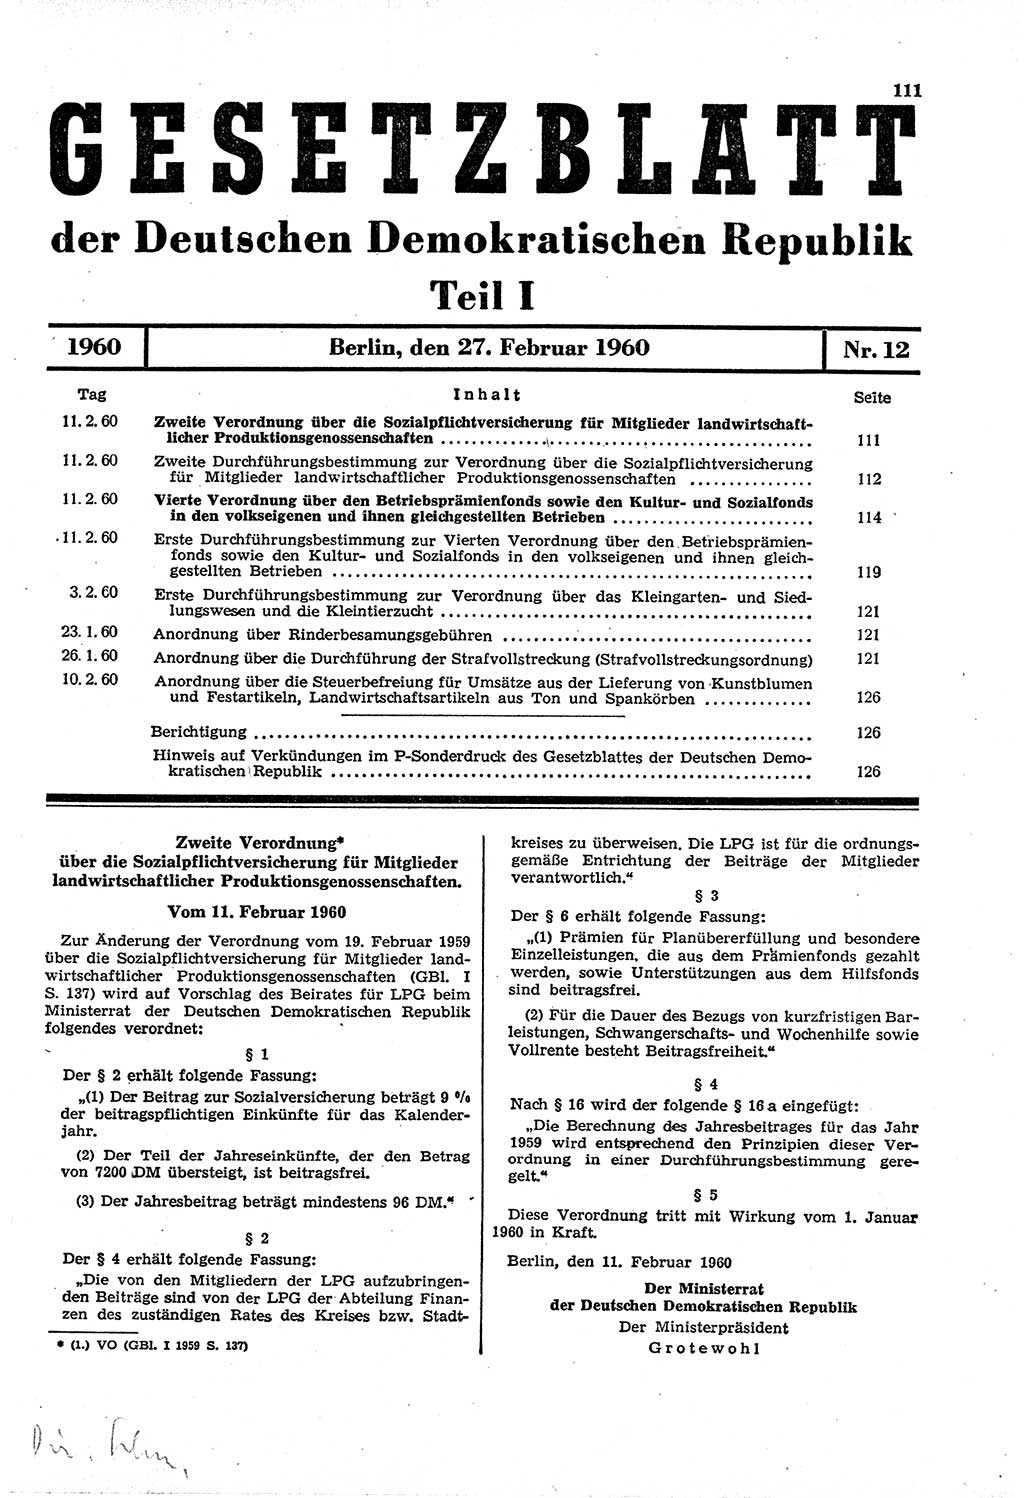 Gesetzblatt (GBl.) der Deutschen Demokratischen Republik (DDR) Teil Ⅰ 1960, Seite 111 (GBl. DDR Ⅰ 1960, S. 111)